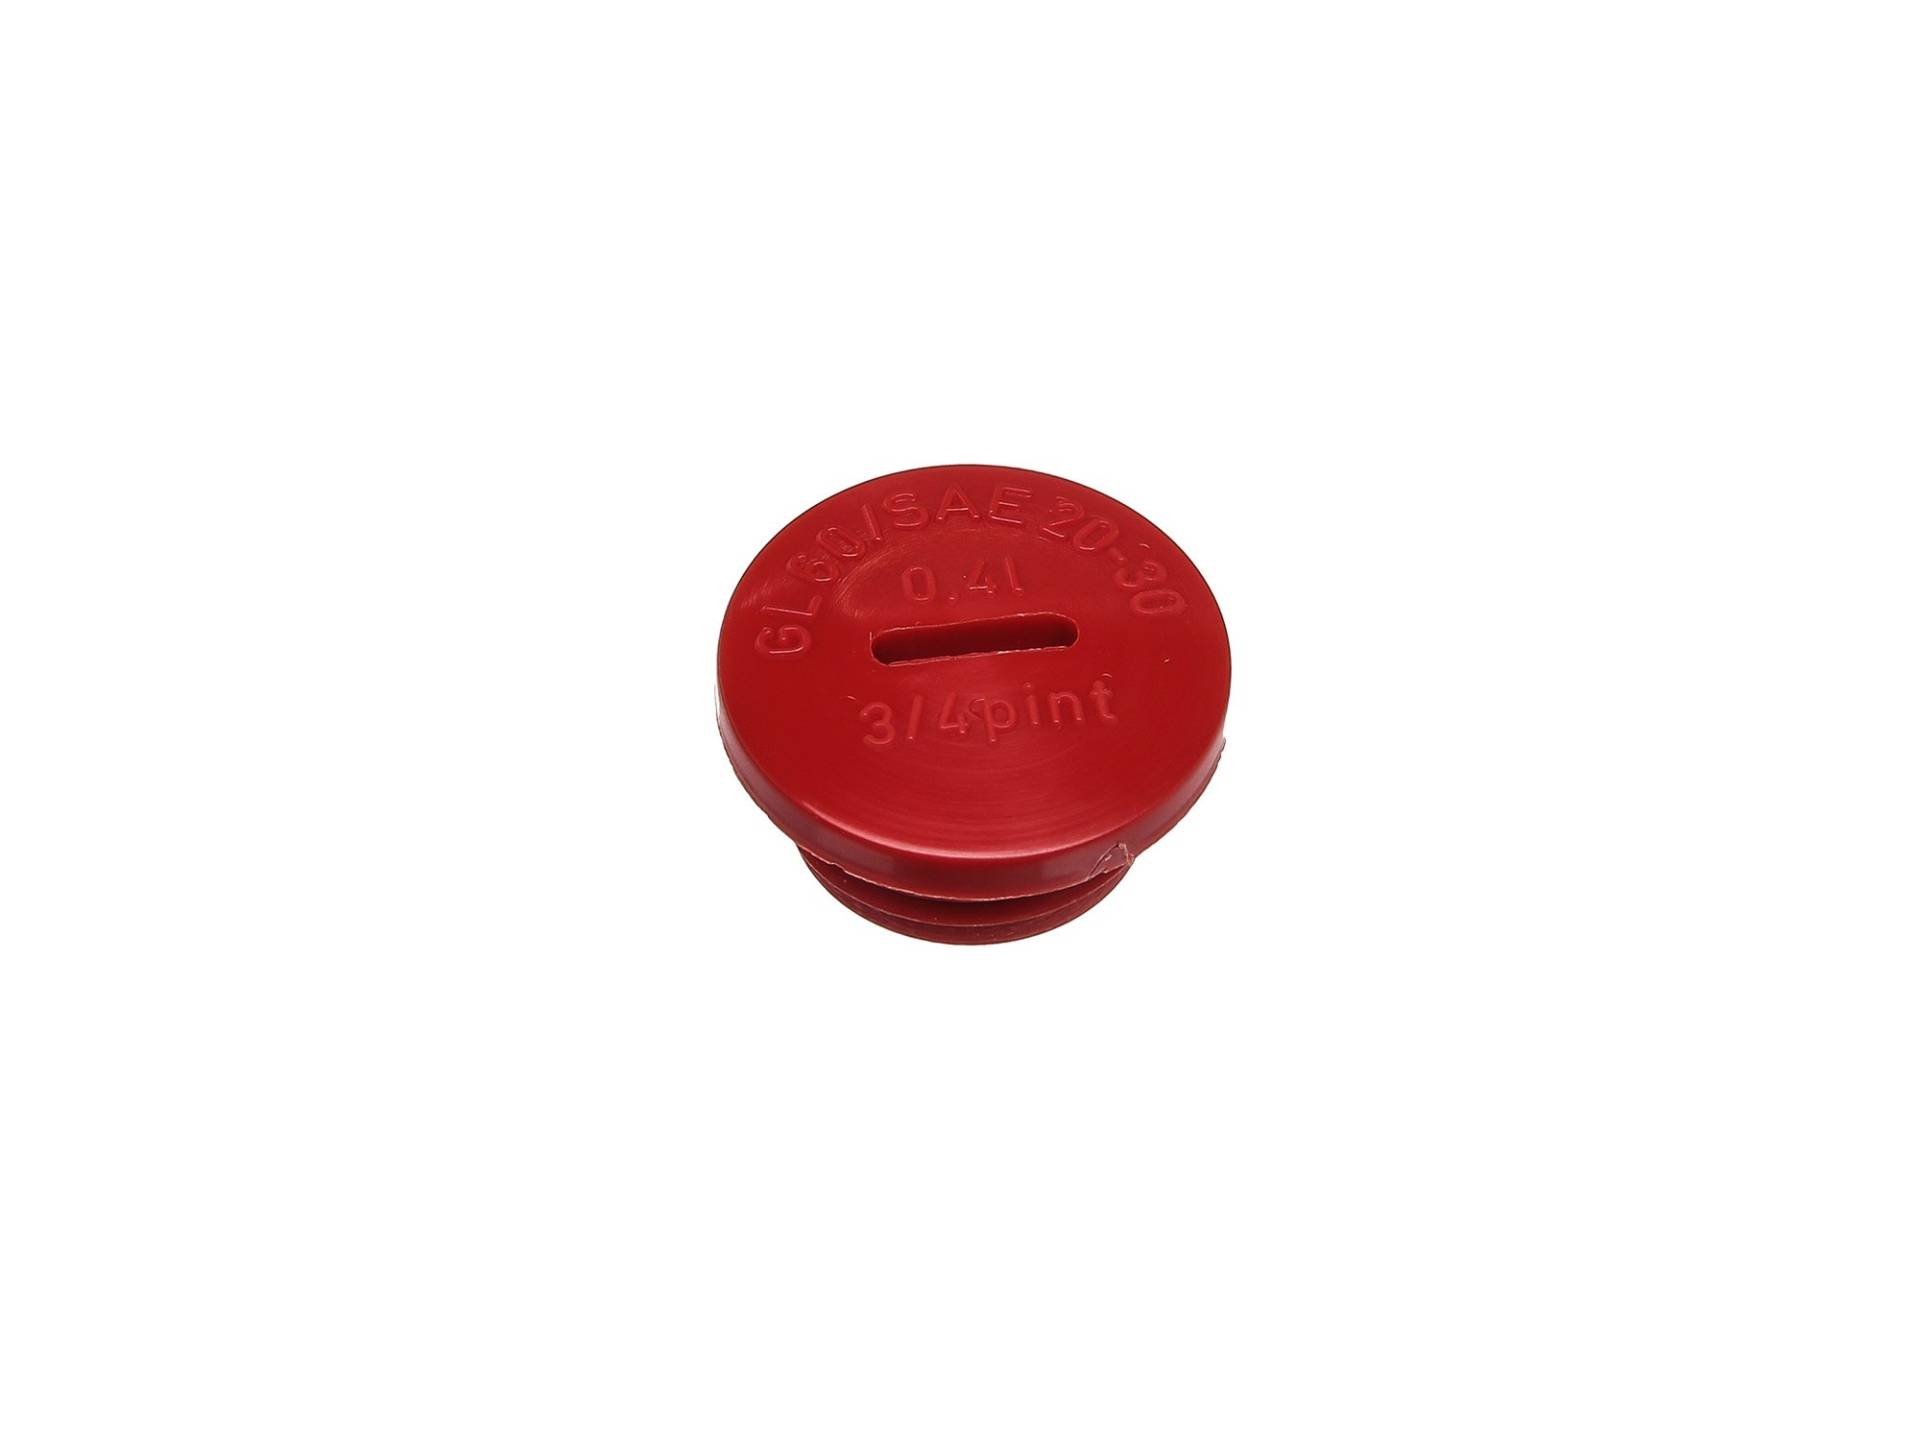 Verschlußschraube - rot (Öleinfüllöffnung) - Original - ohne O-Ring (MZA-82004) - S51,S53,S70,SR50,SR80,KR51/2 von MZA